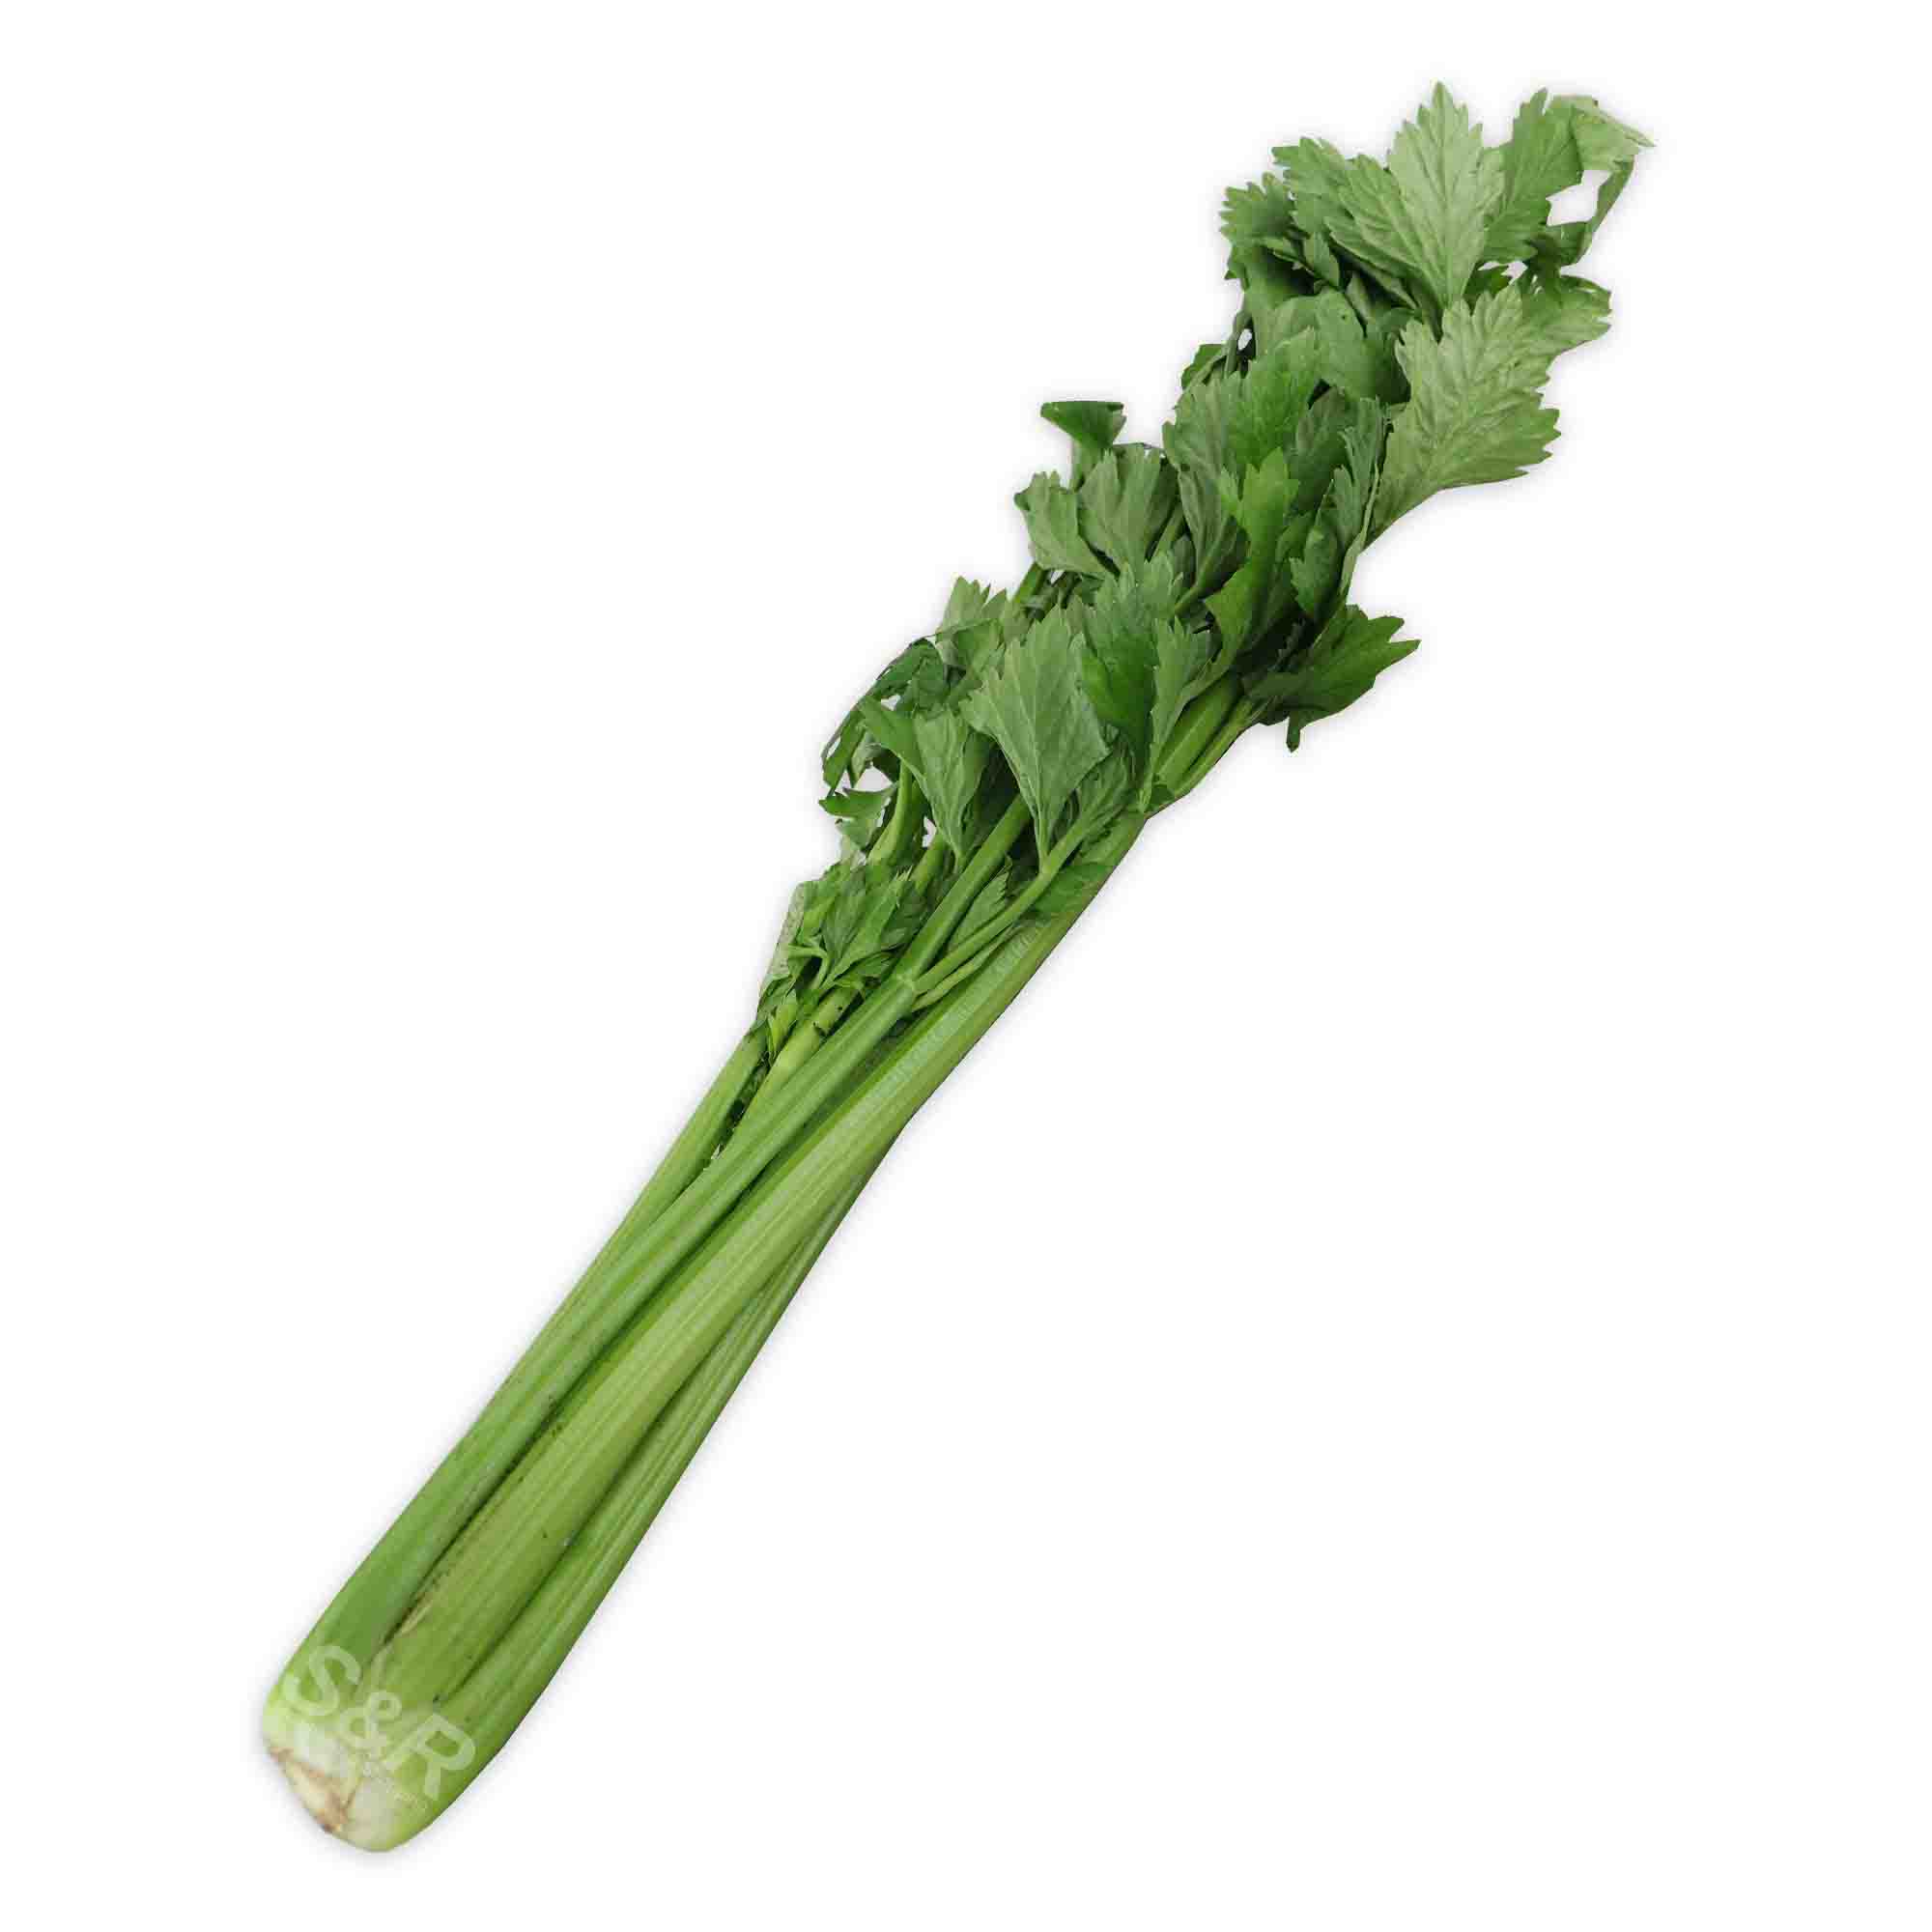 S&R Celery approx. 1kg